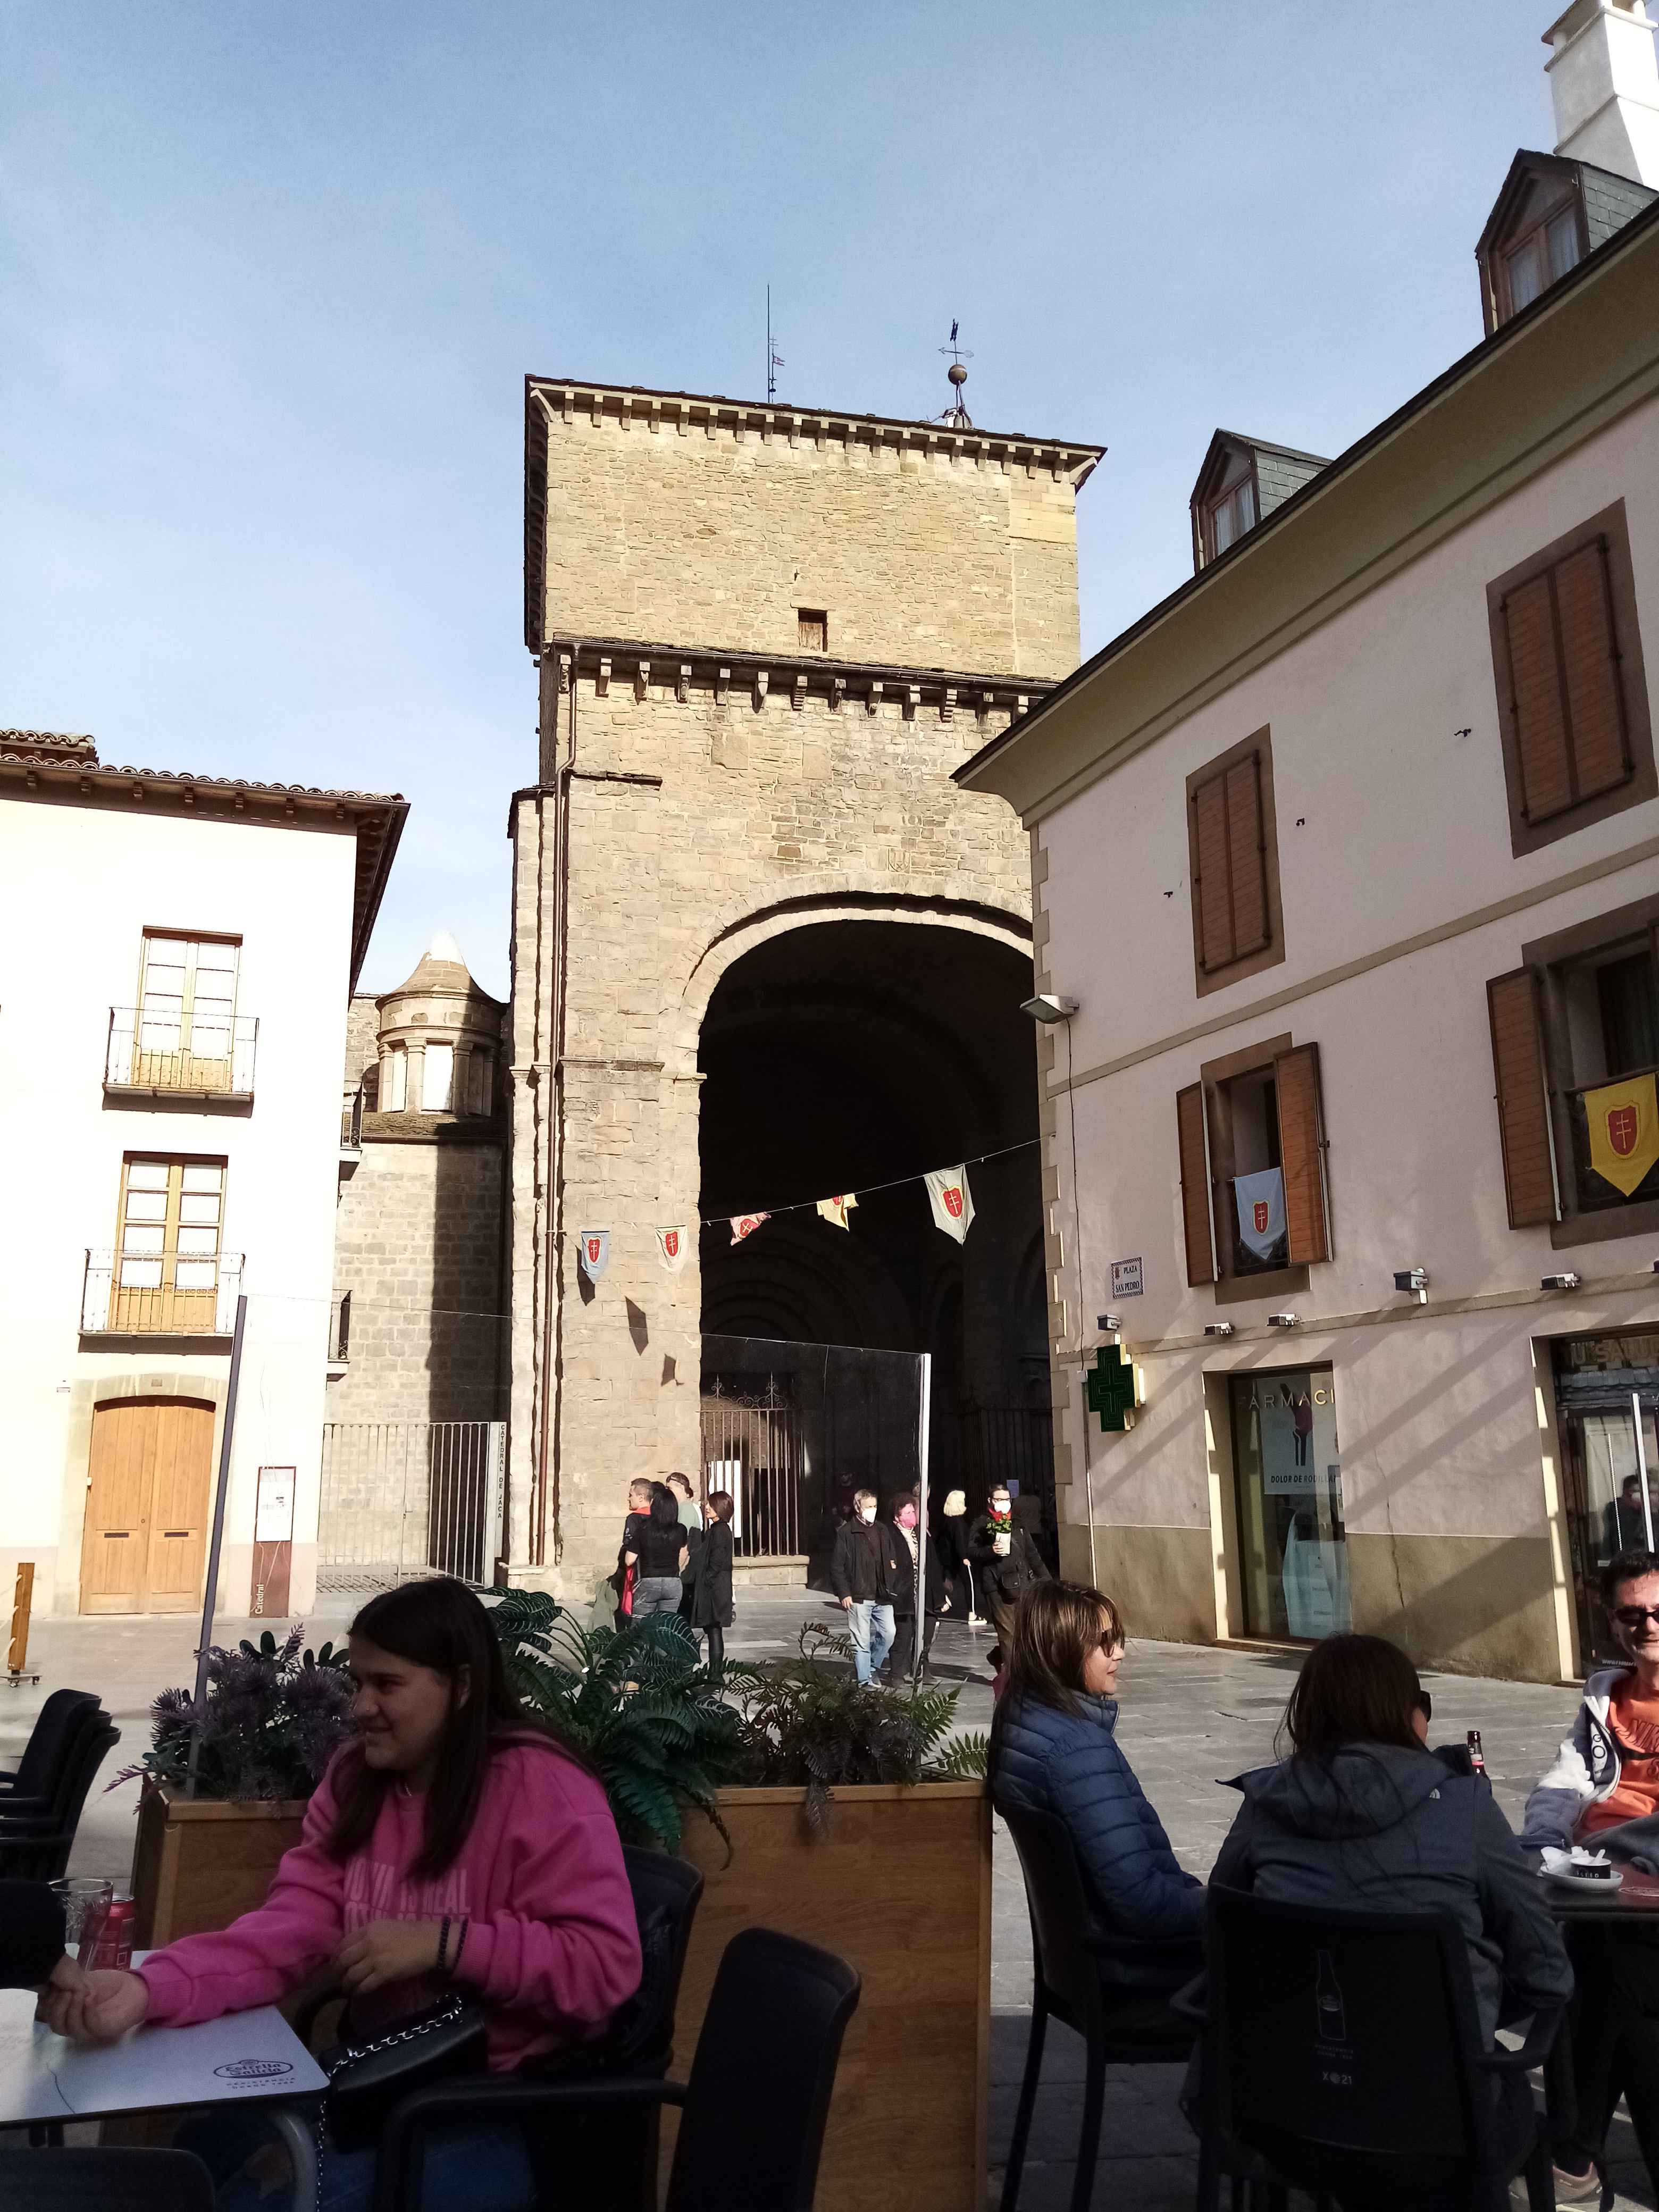 Toute L Annee On Peut Deguster Glaces Et Cafe Dans Lesrues En Aragon en Images